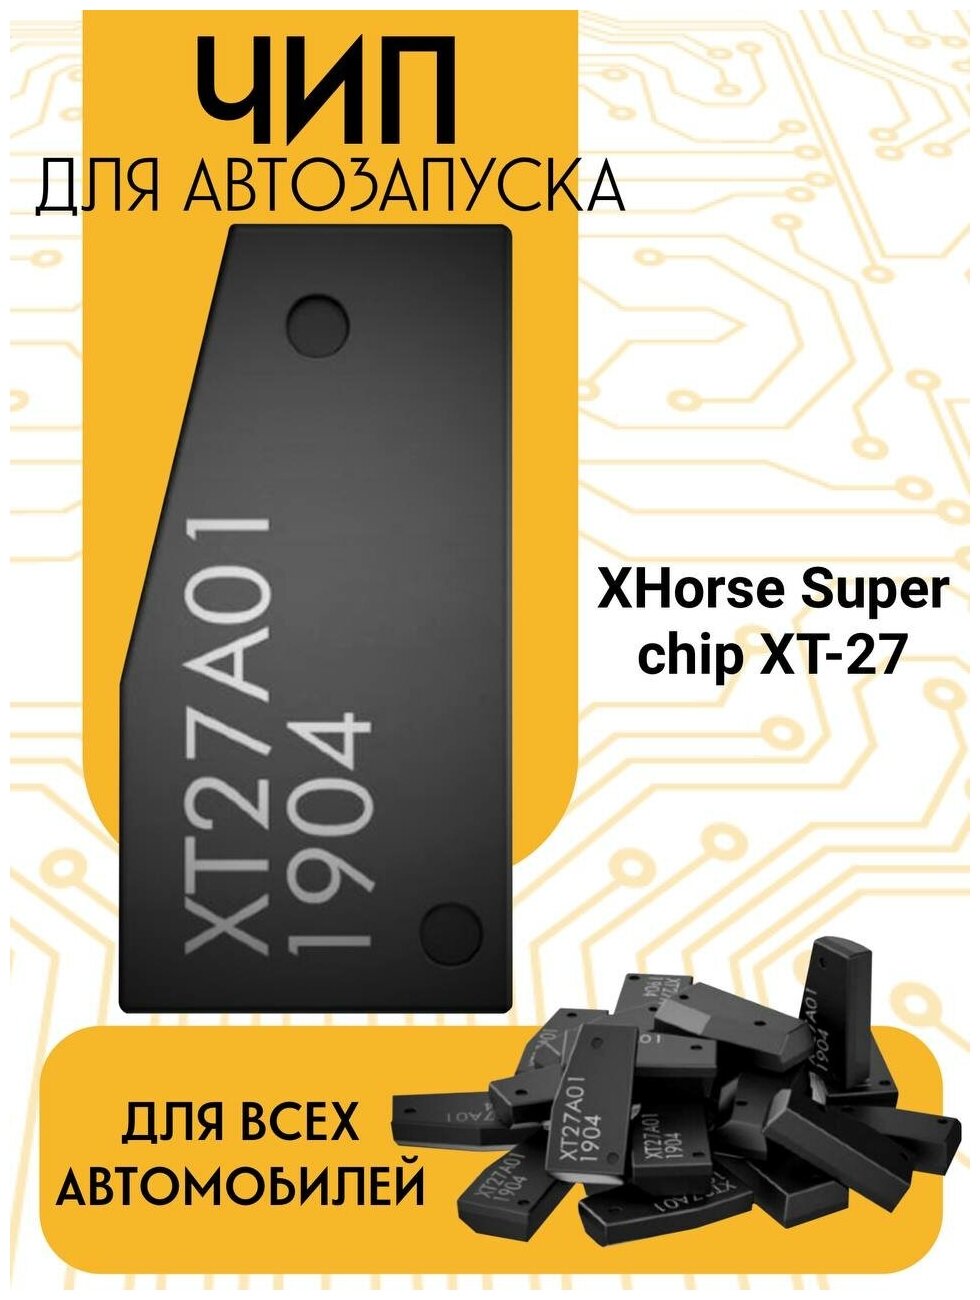 Чип для Автозапуска XT27 для дубликата авто ключа иммобилайзера (транспондер)